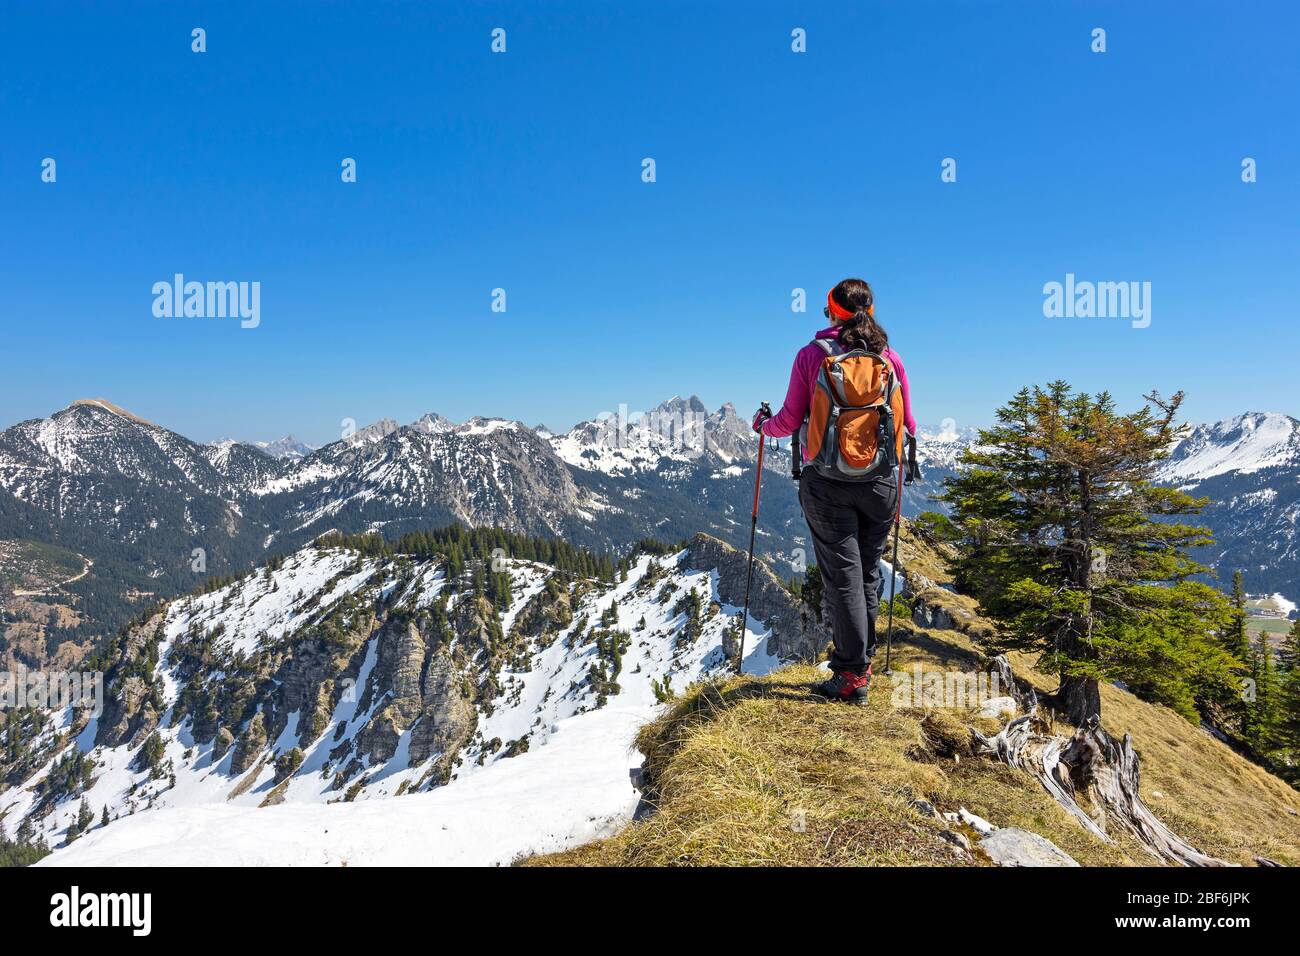 Woman hiking in the mountains. Allgäu Alps, Tirol, Austria Stock Photo